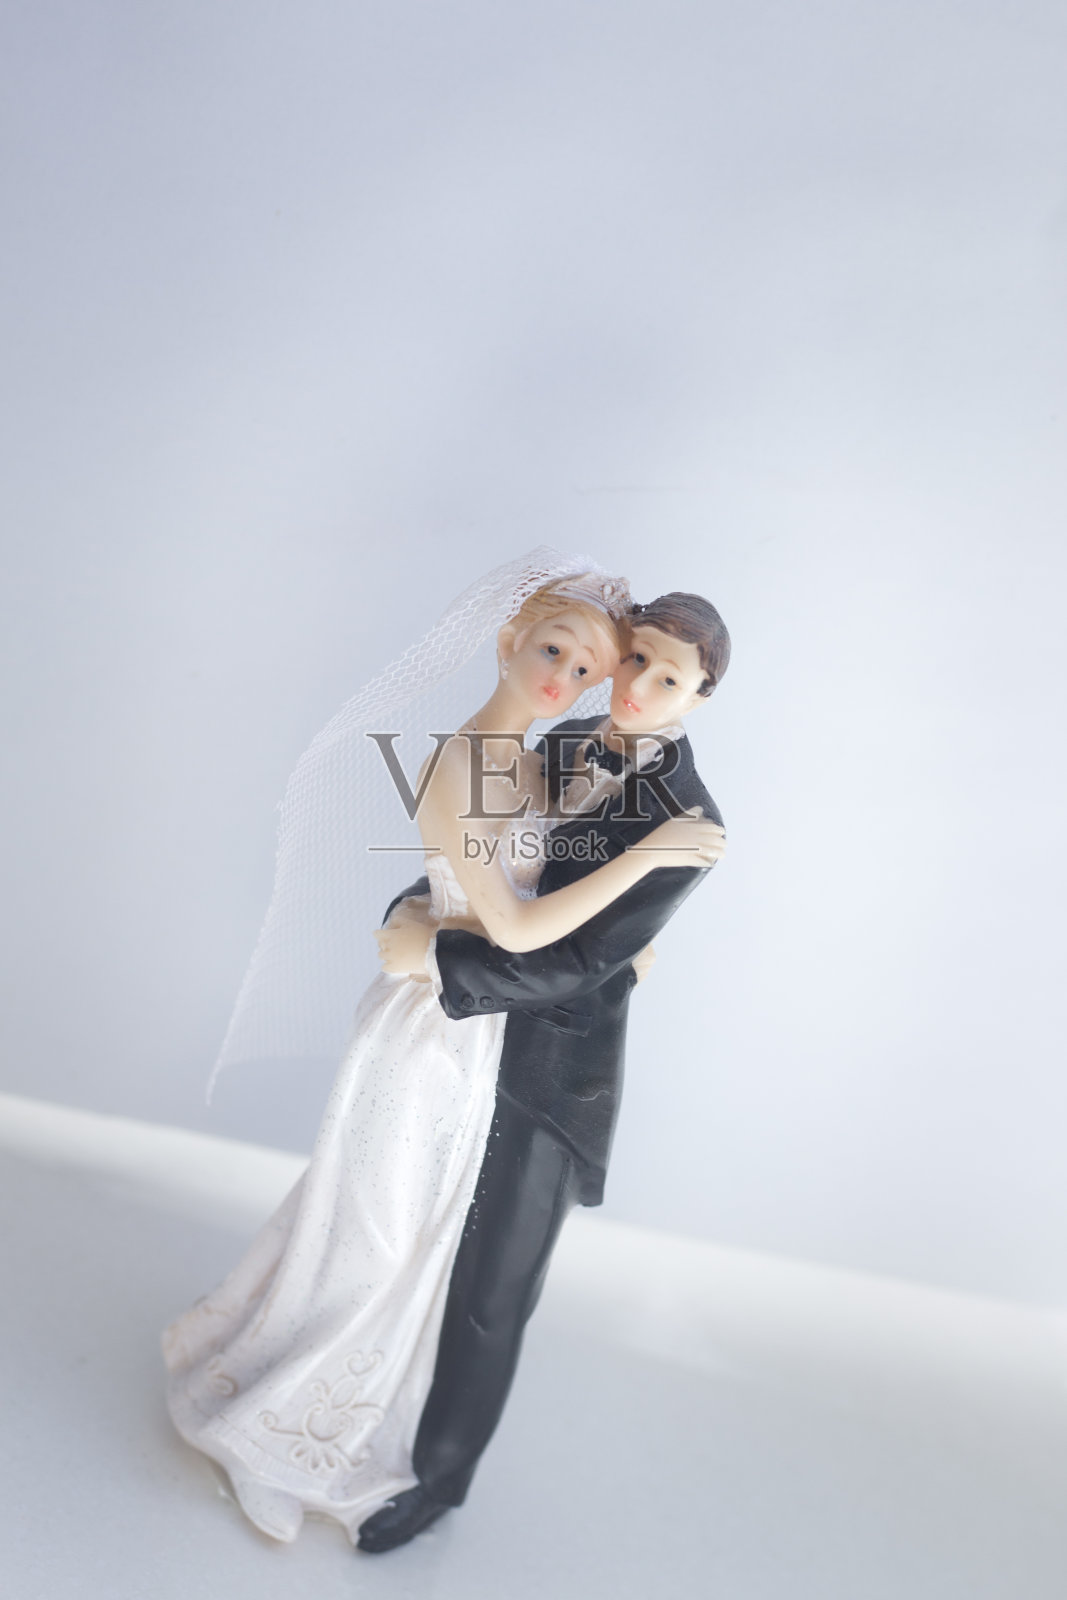 新娘和新郎的婚礼蛋糕顶部塑料雕像举行婚礼仪式后。照片摄影图片